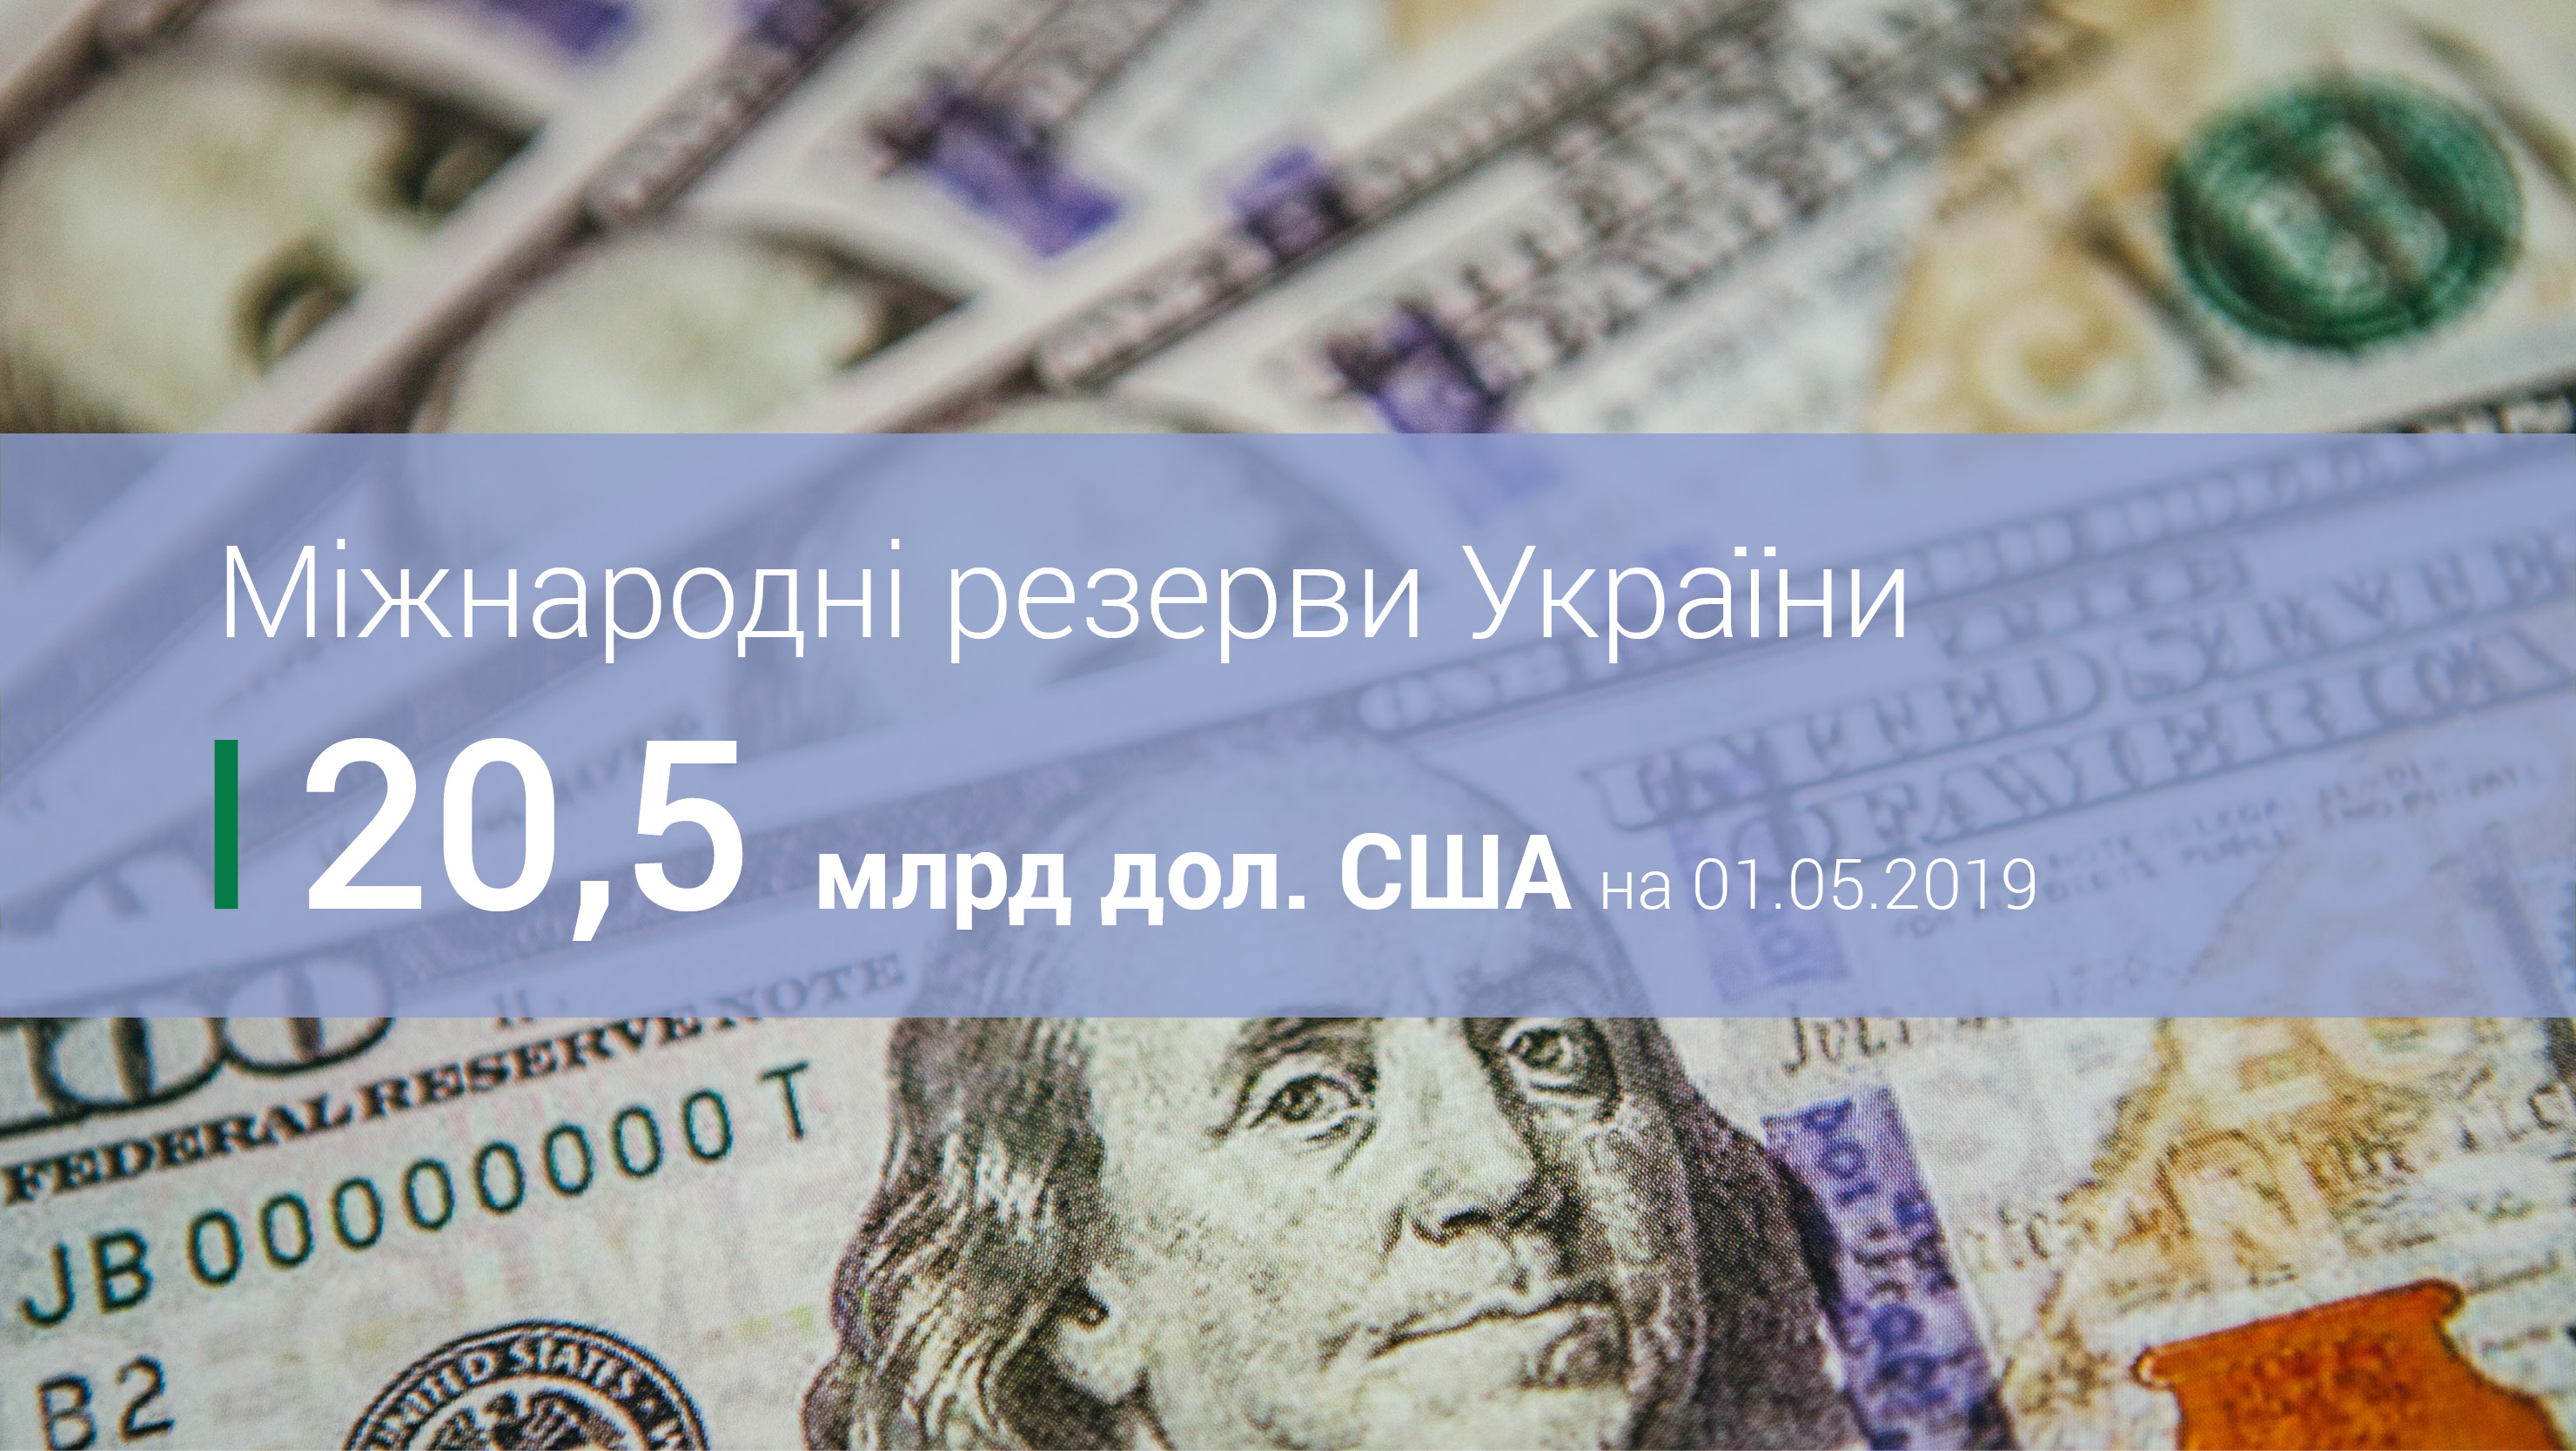 Міжнародні резерви України становили 20,5 млрд дол. США за підсумками квітня 2019 року